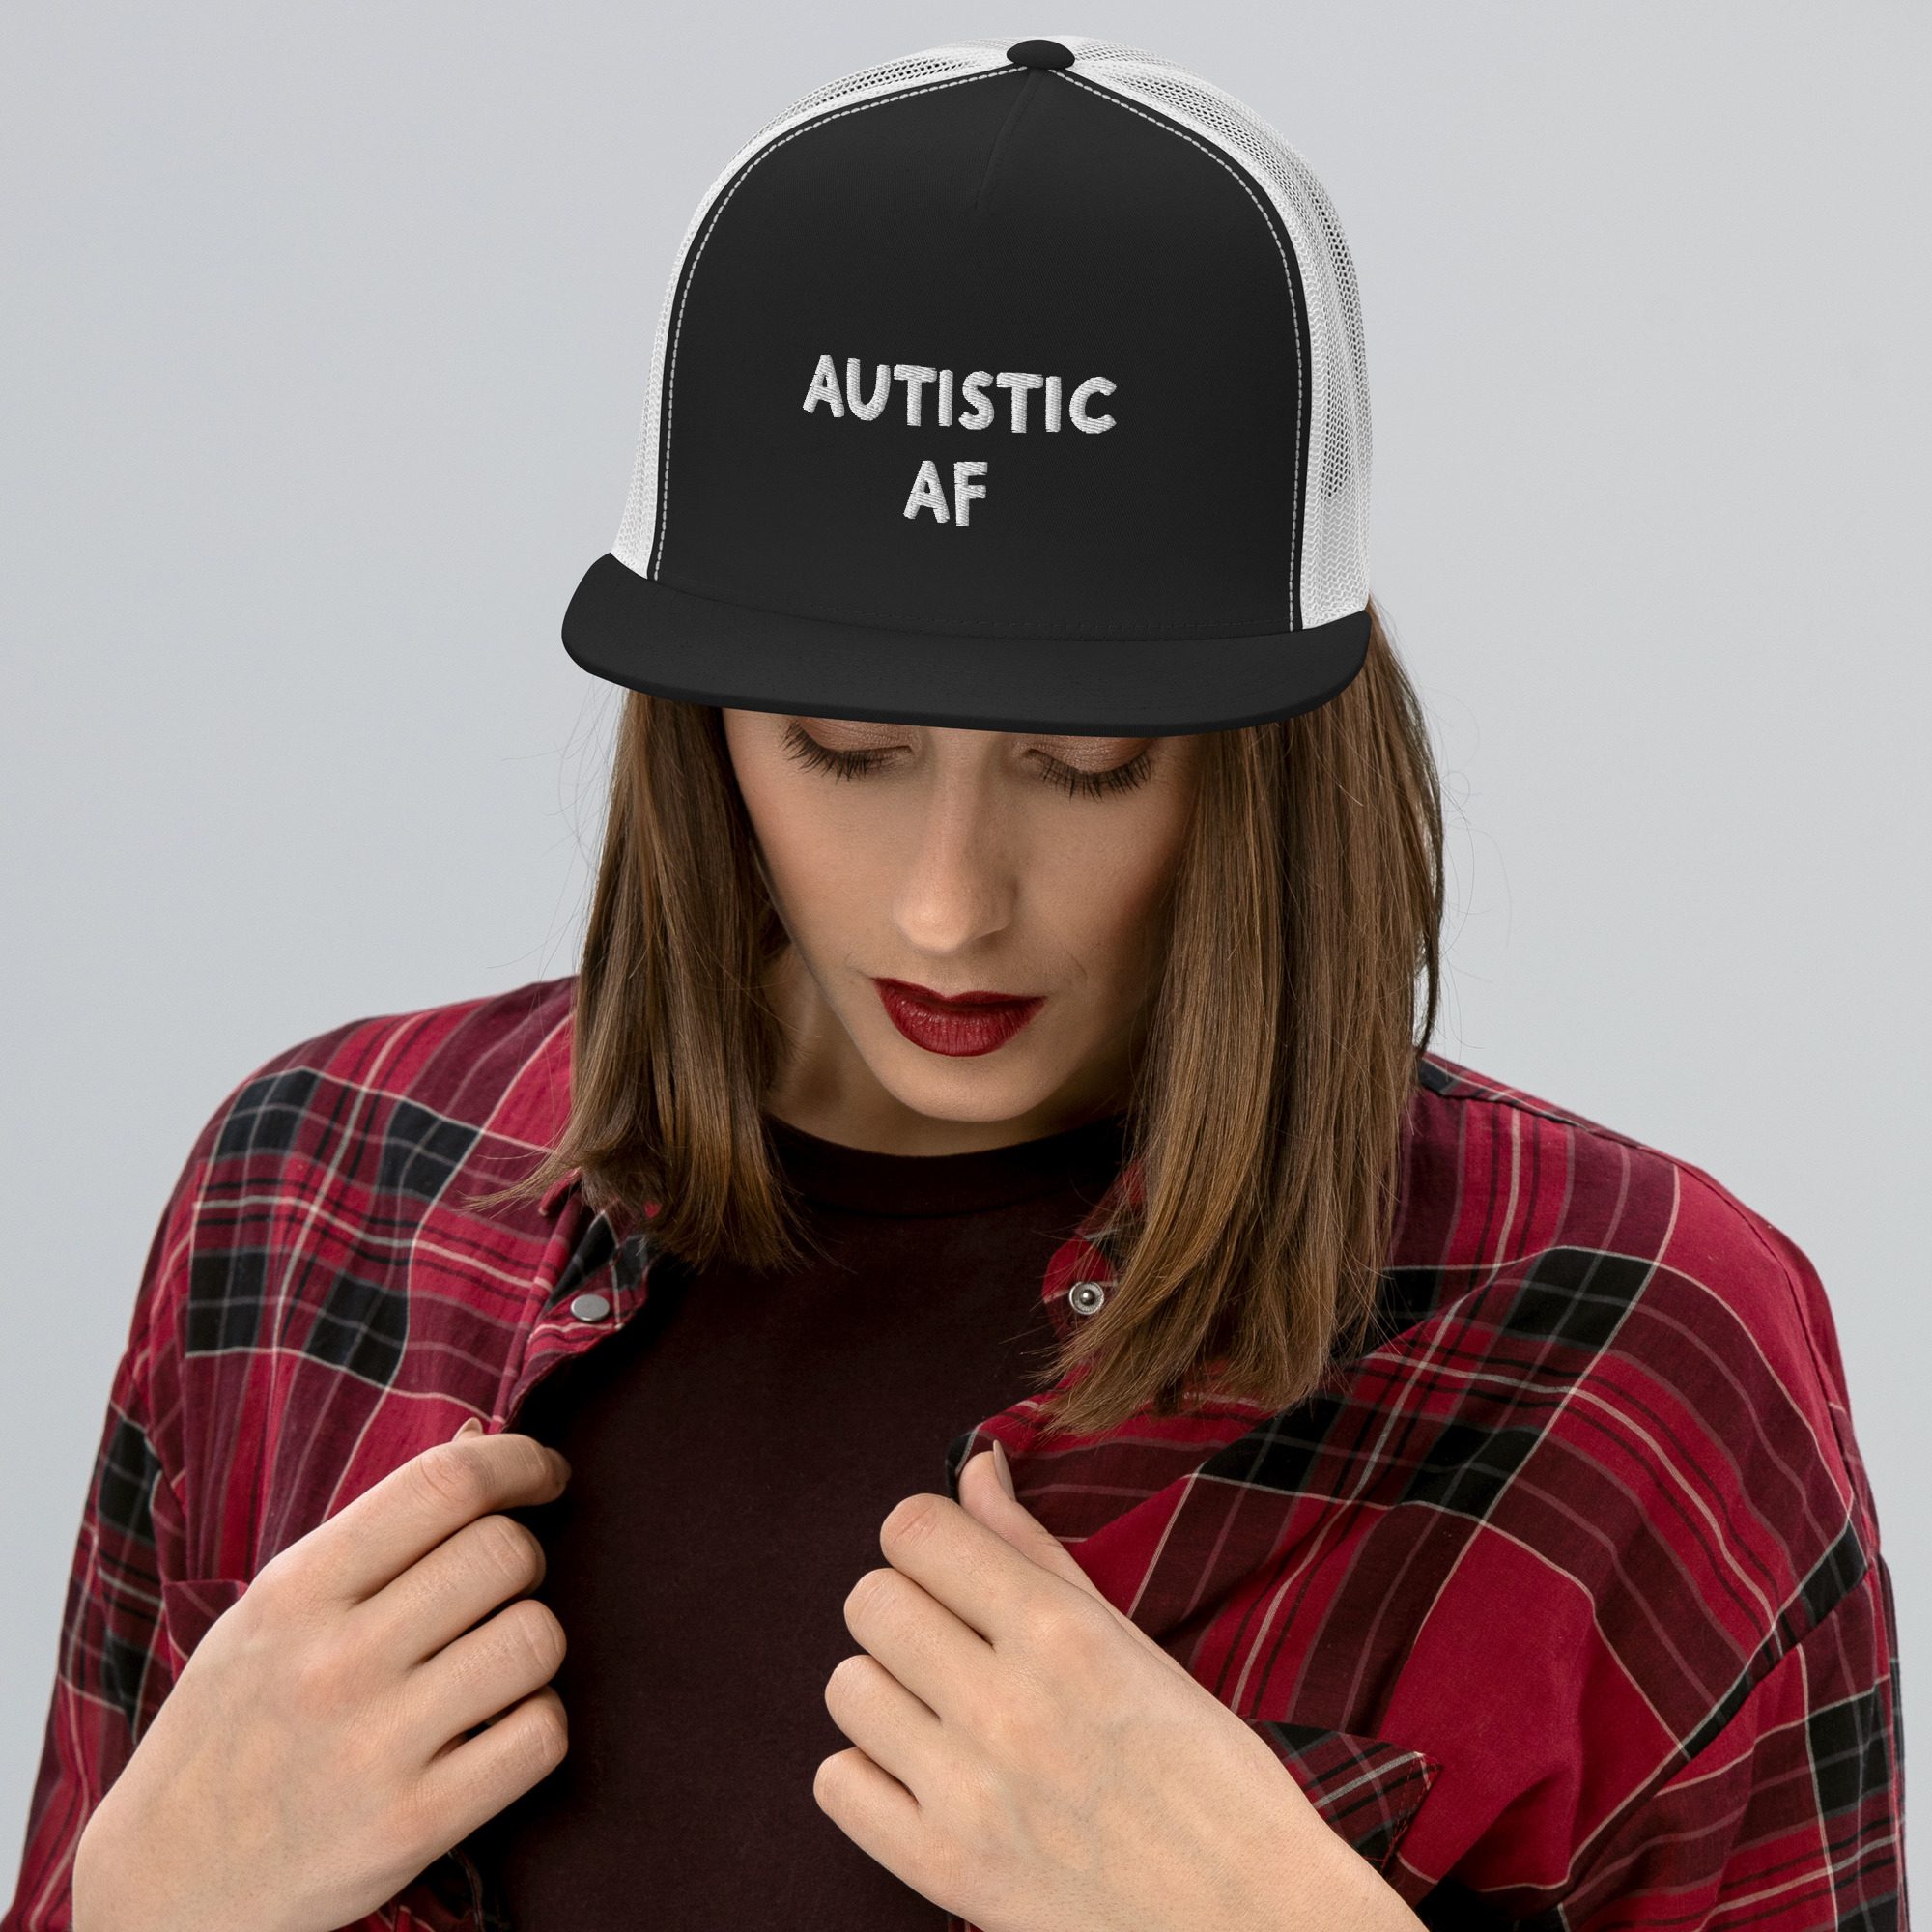 Autistic AF Trucker Cap